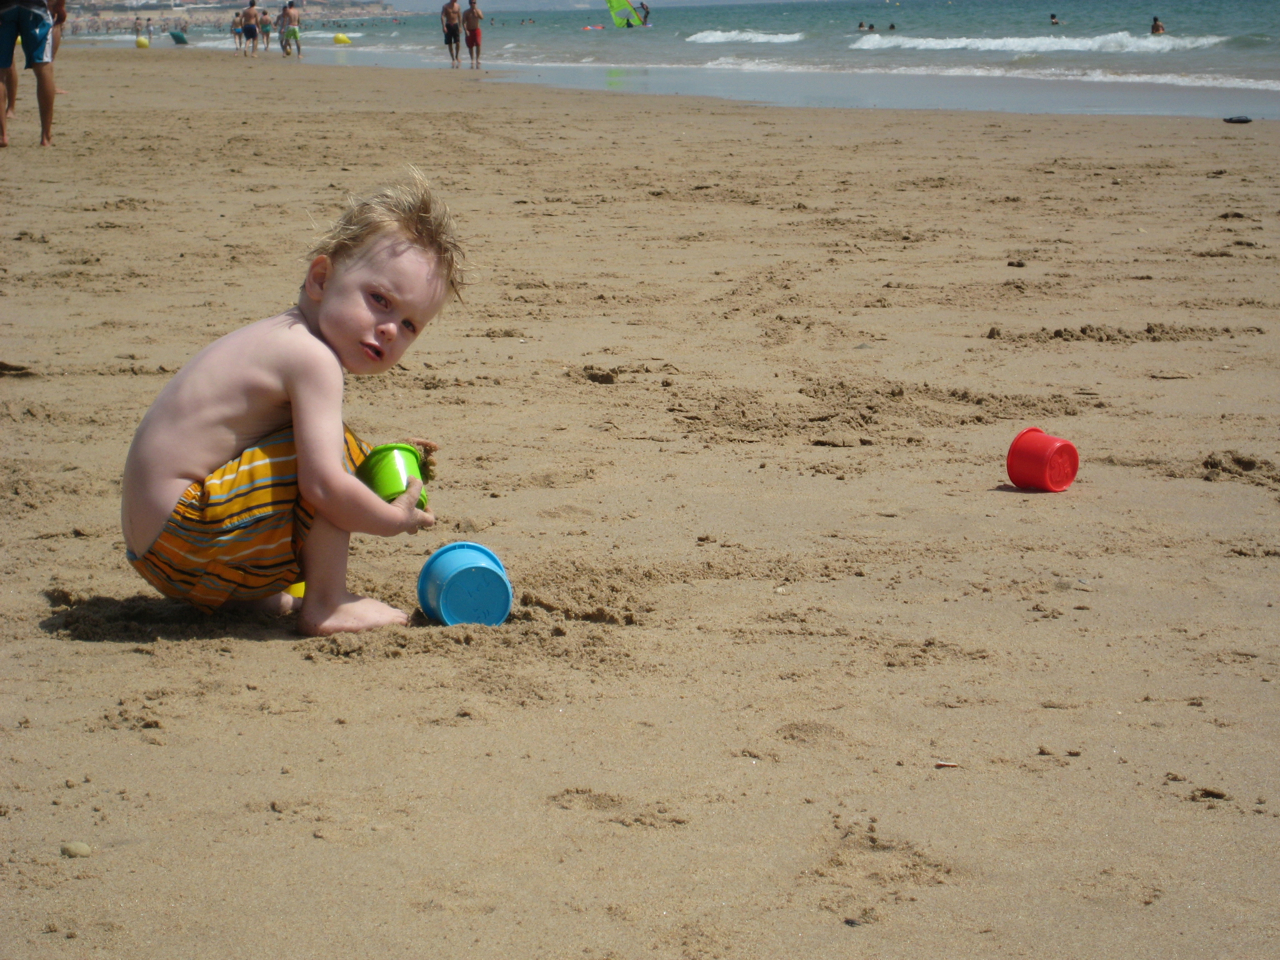 Fun in the sand!